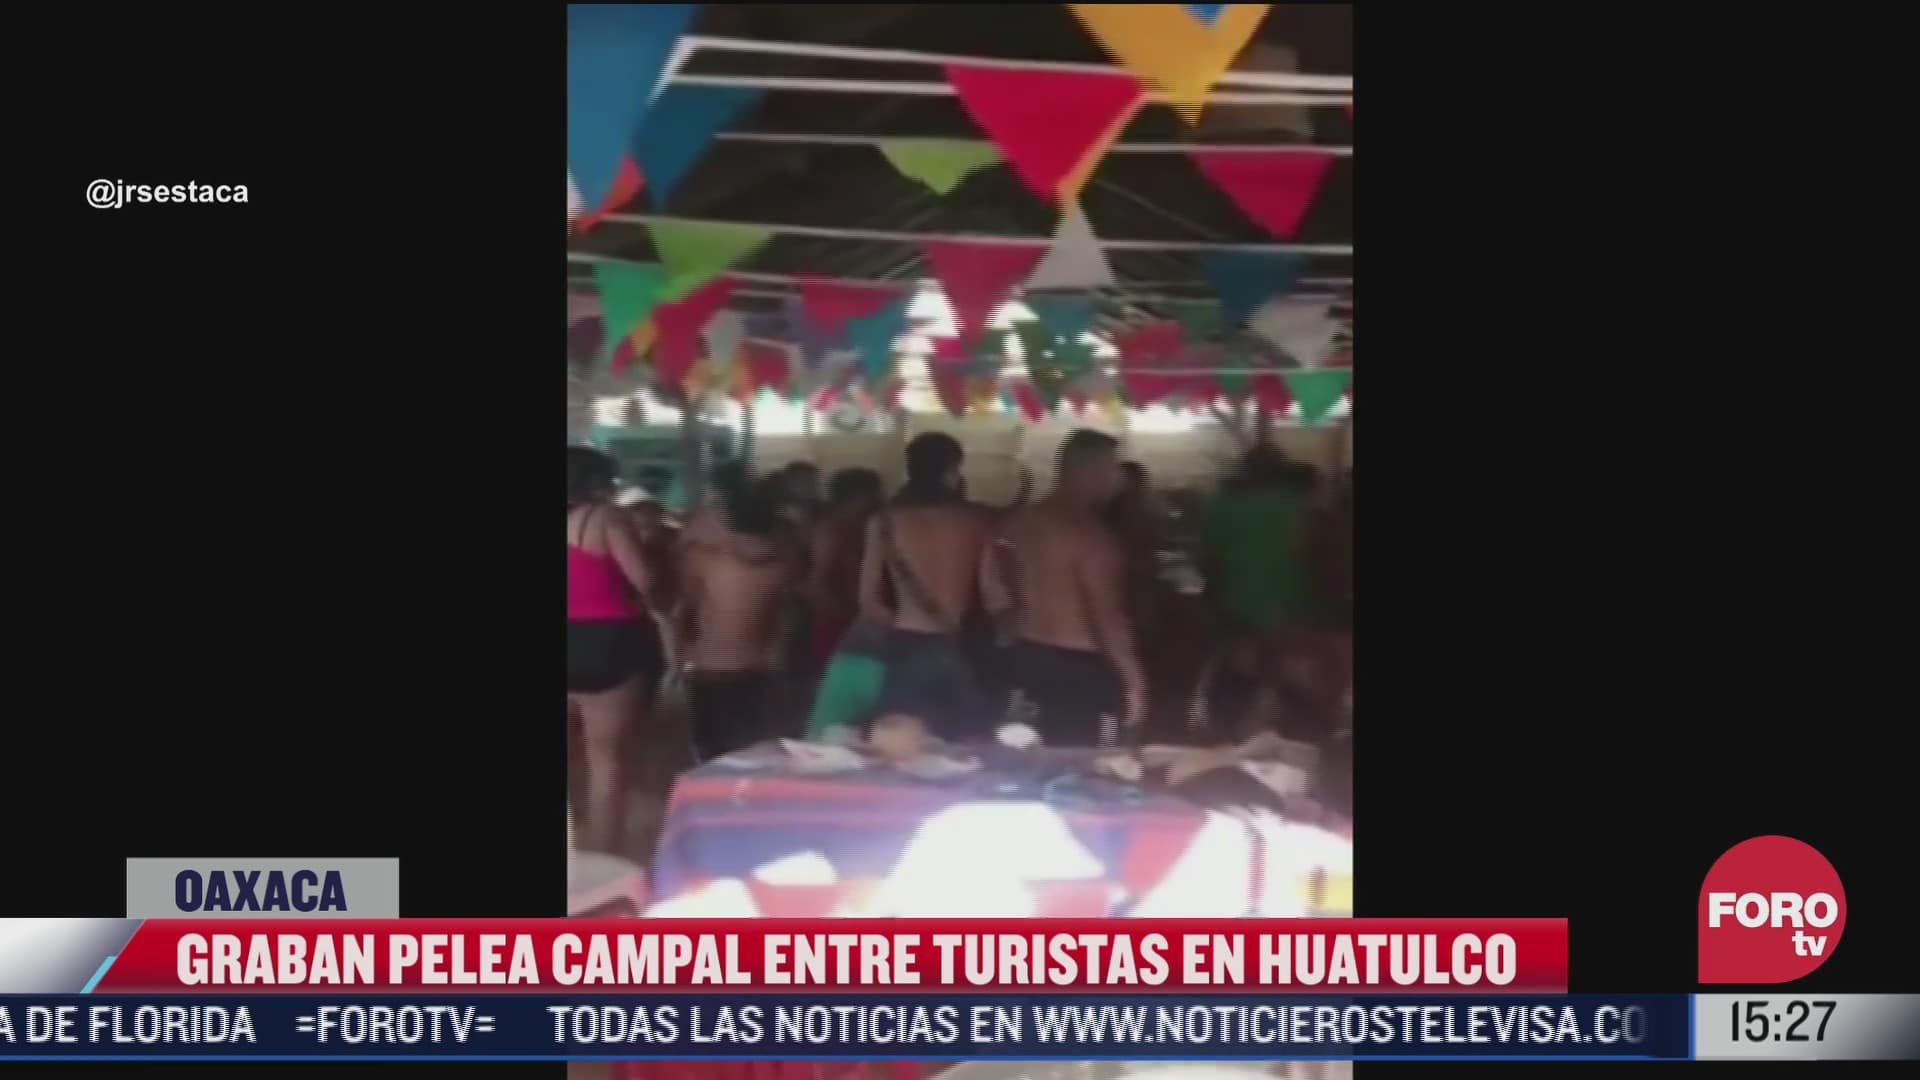 video pelea campal entre turistas en huatulco oaxaca